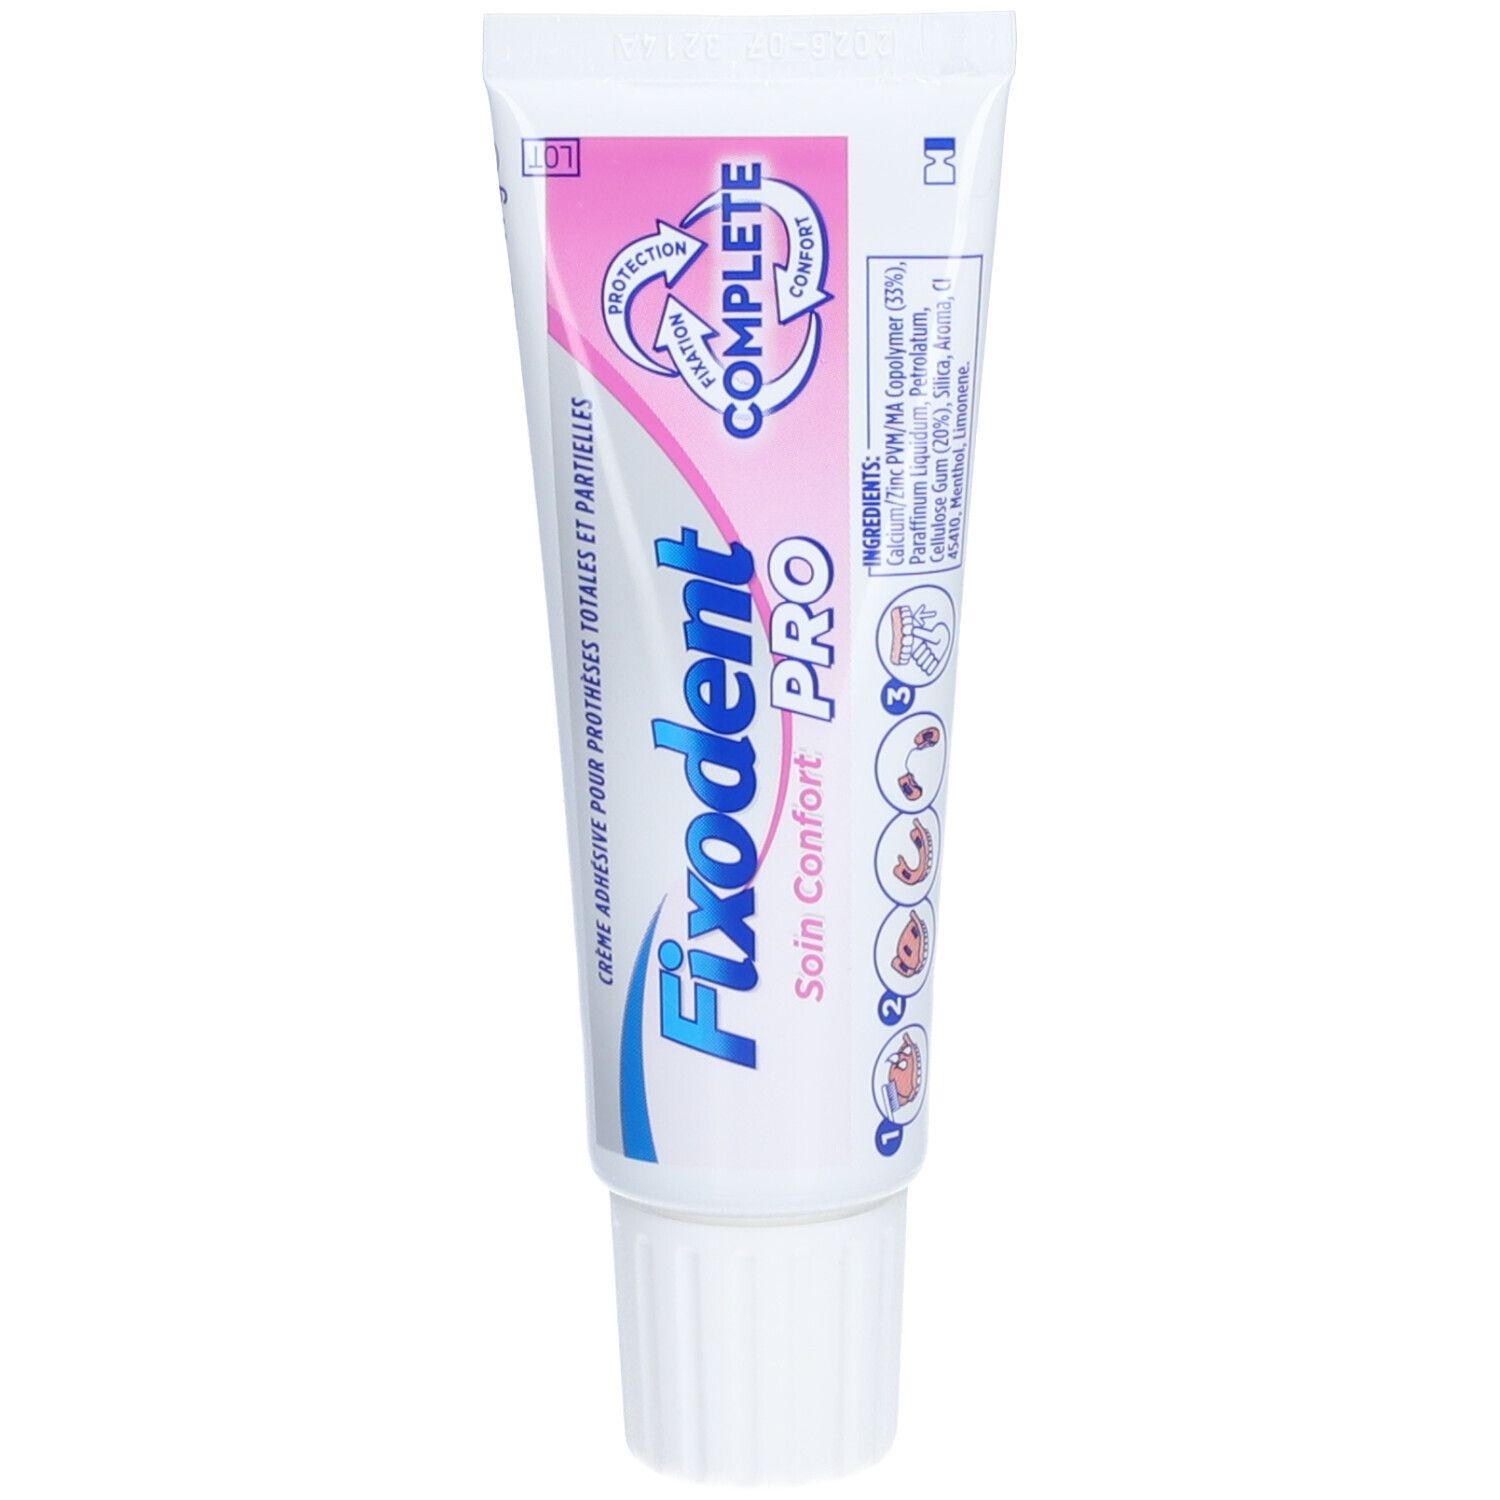 Fixodent PRO Soin Confort - Crème adhésive pour prothèse dentaire. - tube 47 g